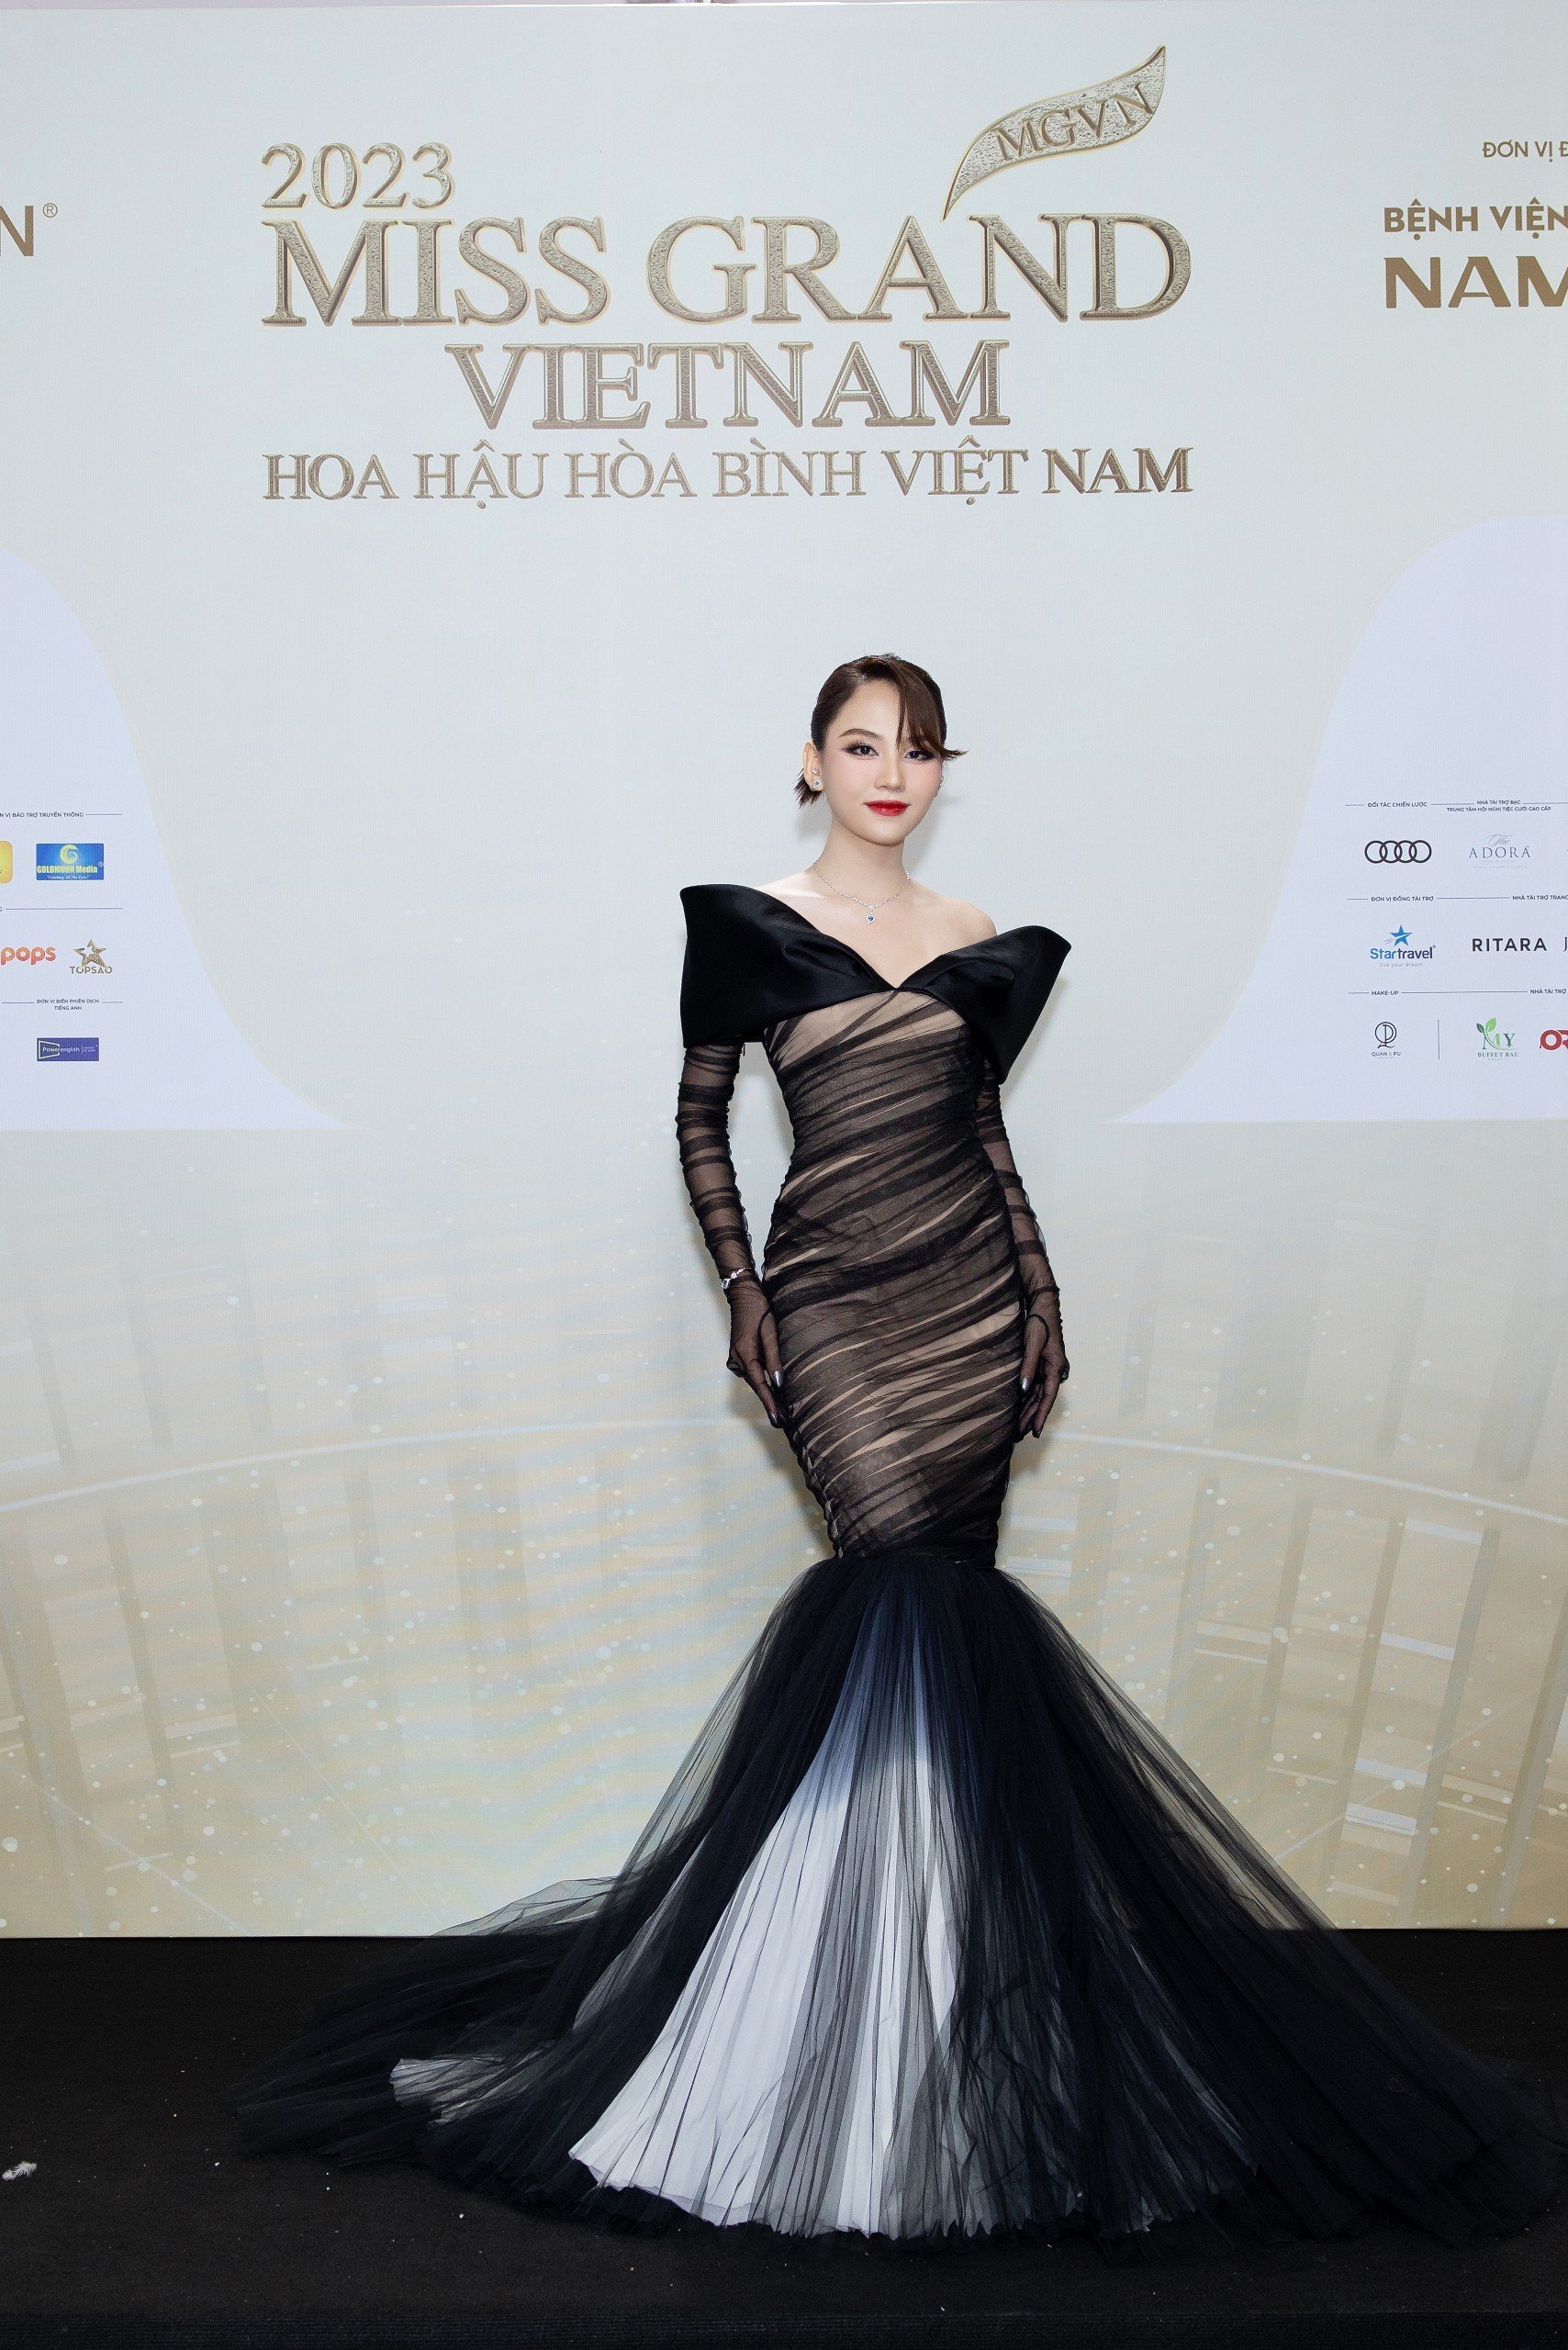 Thảm đỏ chung khảo toàn quốc Miss Grand Vietnam 2023: Huỳnh Minh Kiên khoe đường cong, Thuỳ Tiên kín đáo vẫn đẹp - ảnh 3